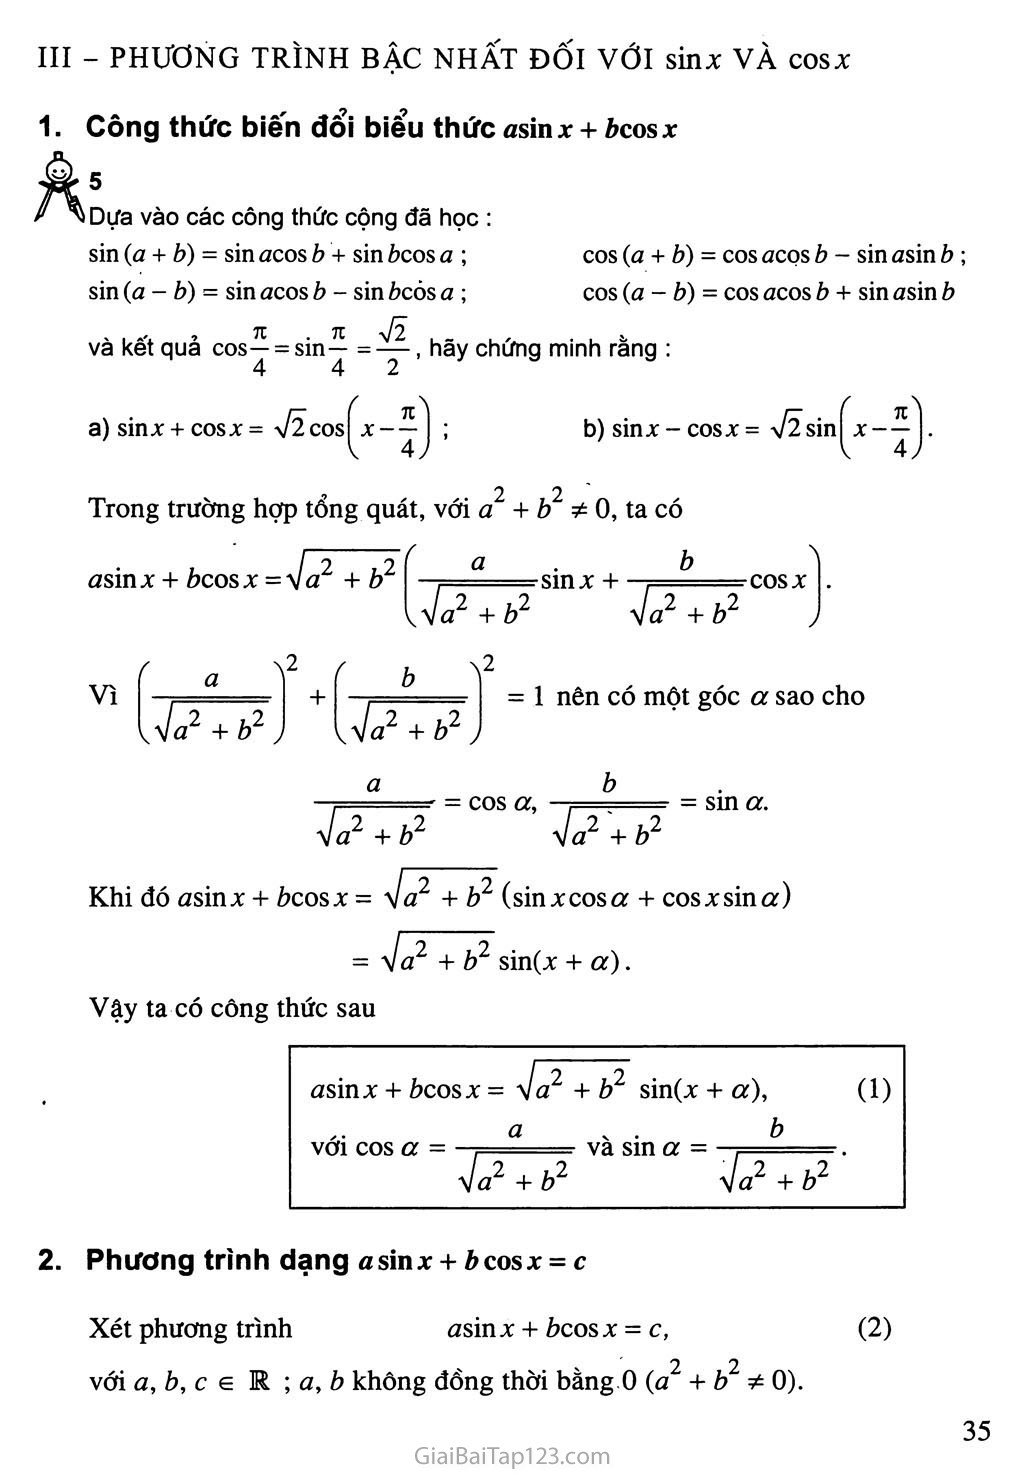 Bài 3. Một số phương trình lượng giác thường gặp trang 7